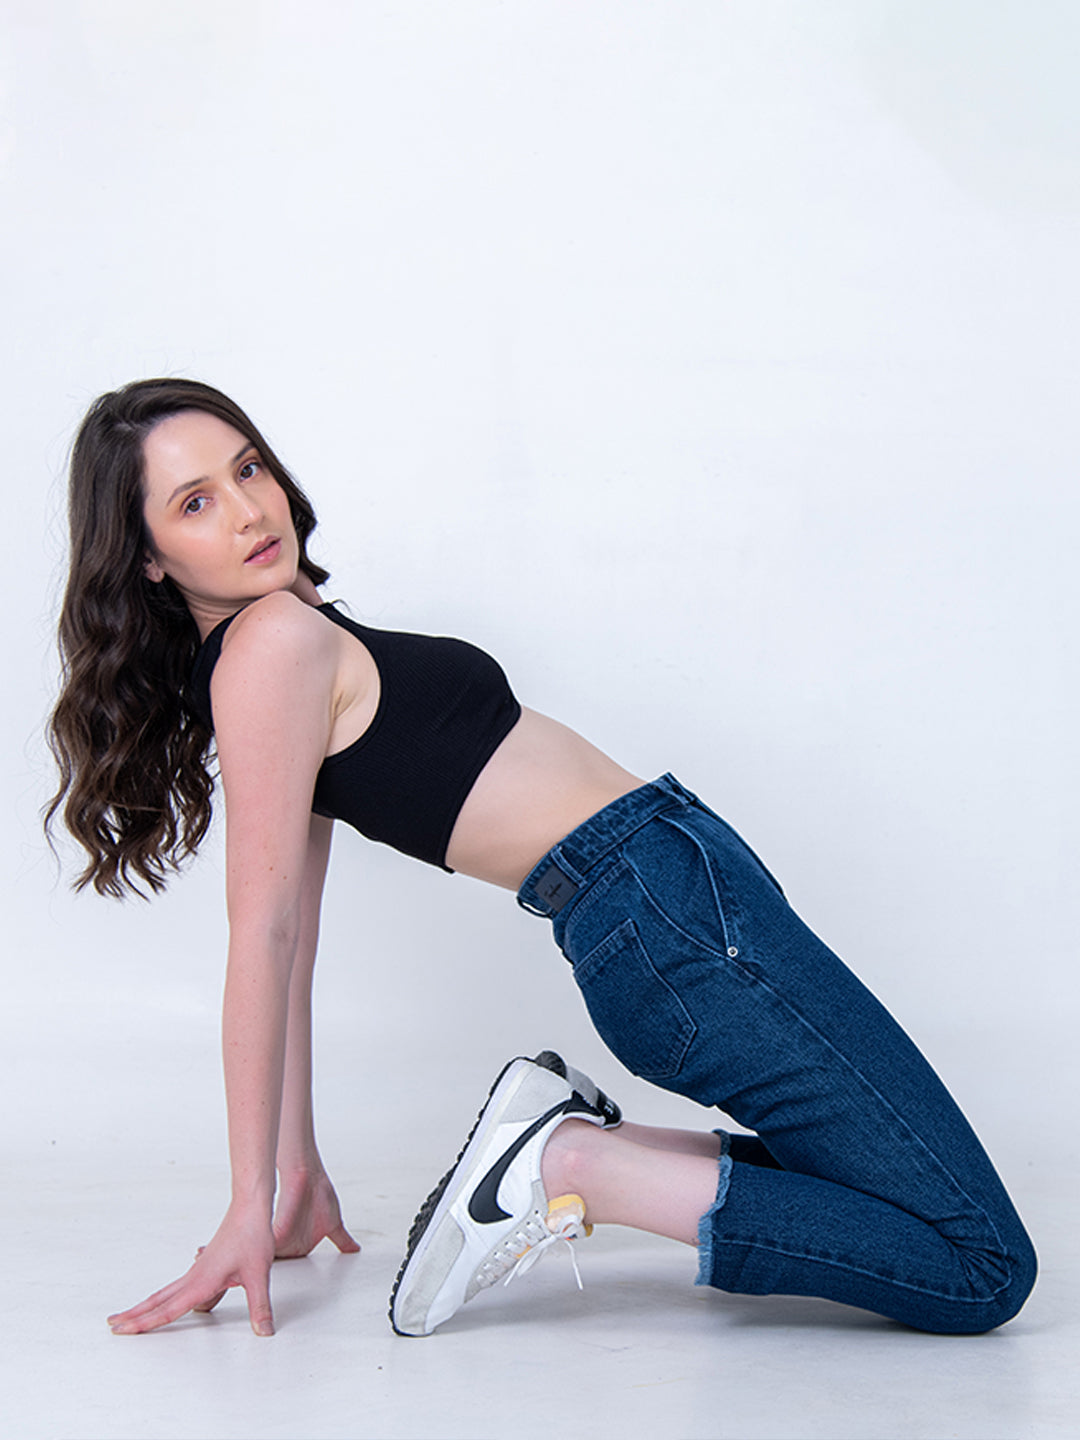 HD girl in jeans wallpapers | Peakpx